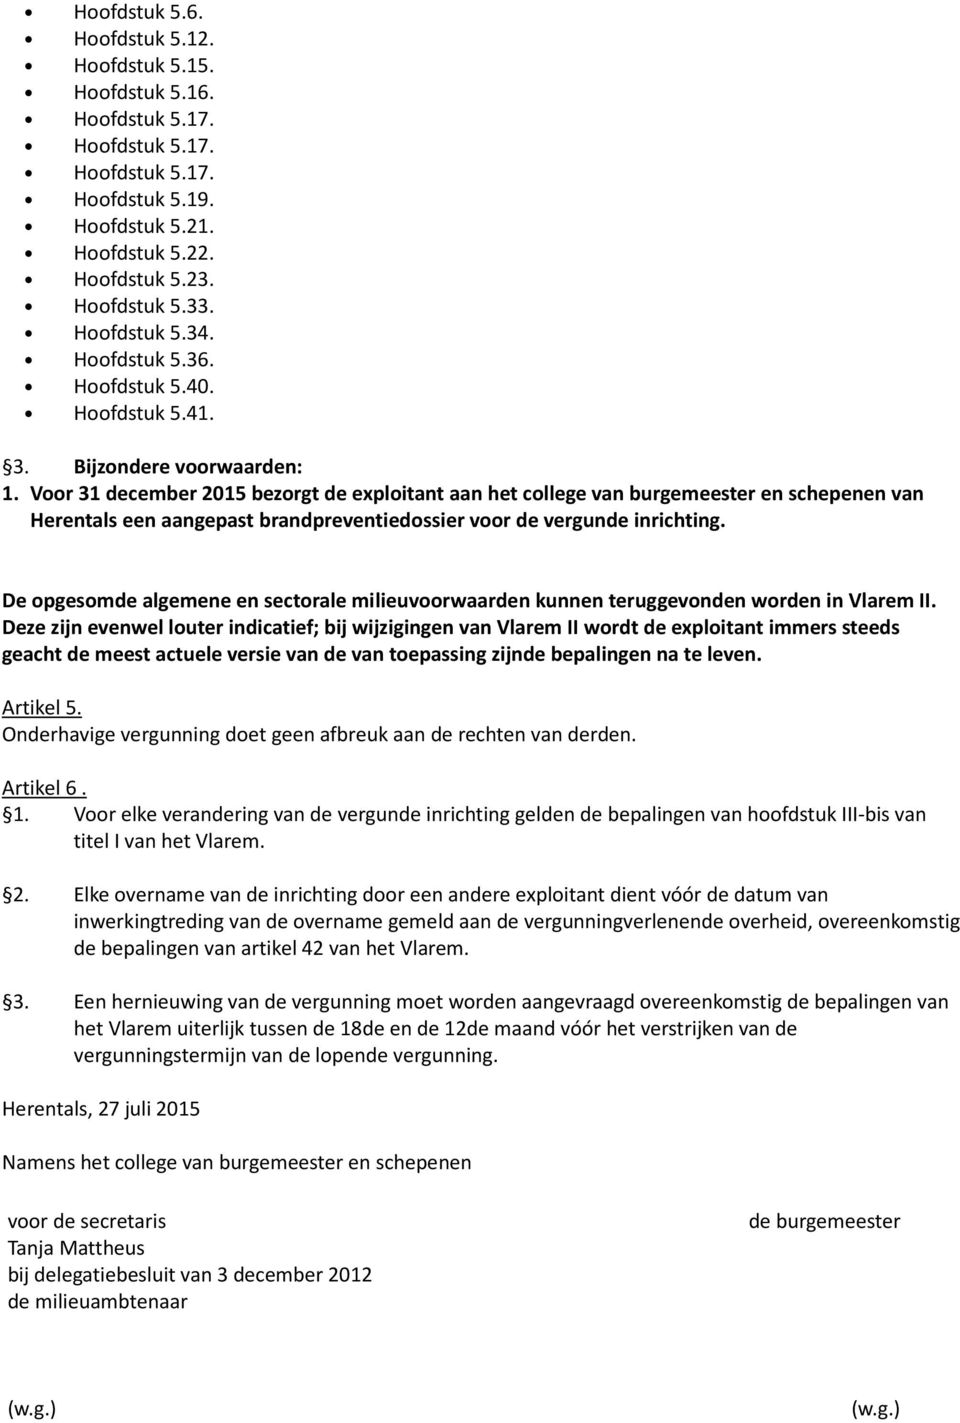 Voor 31 december 2015 bezorgt de exploitant aan het college van burgemeester en schepenen van Herentals een aangepast brandpreventiedossier voor de vergunde inrichting.